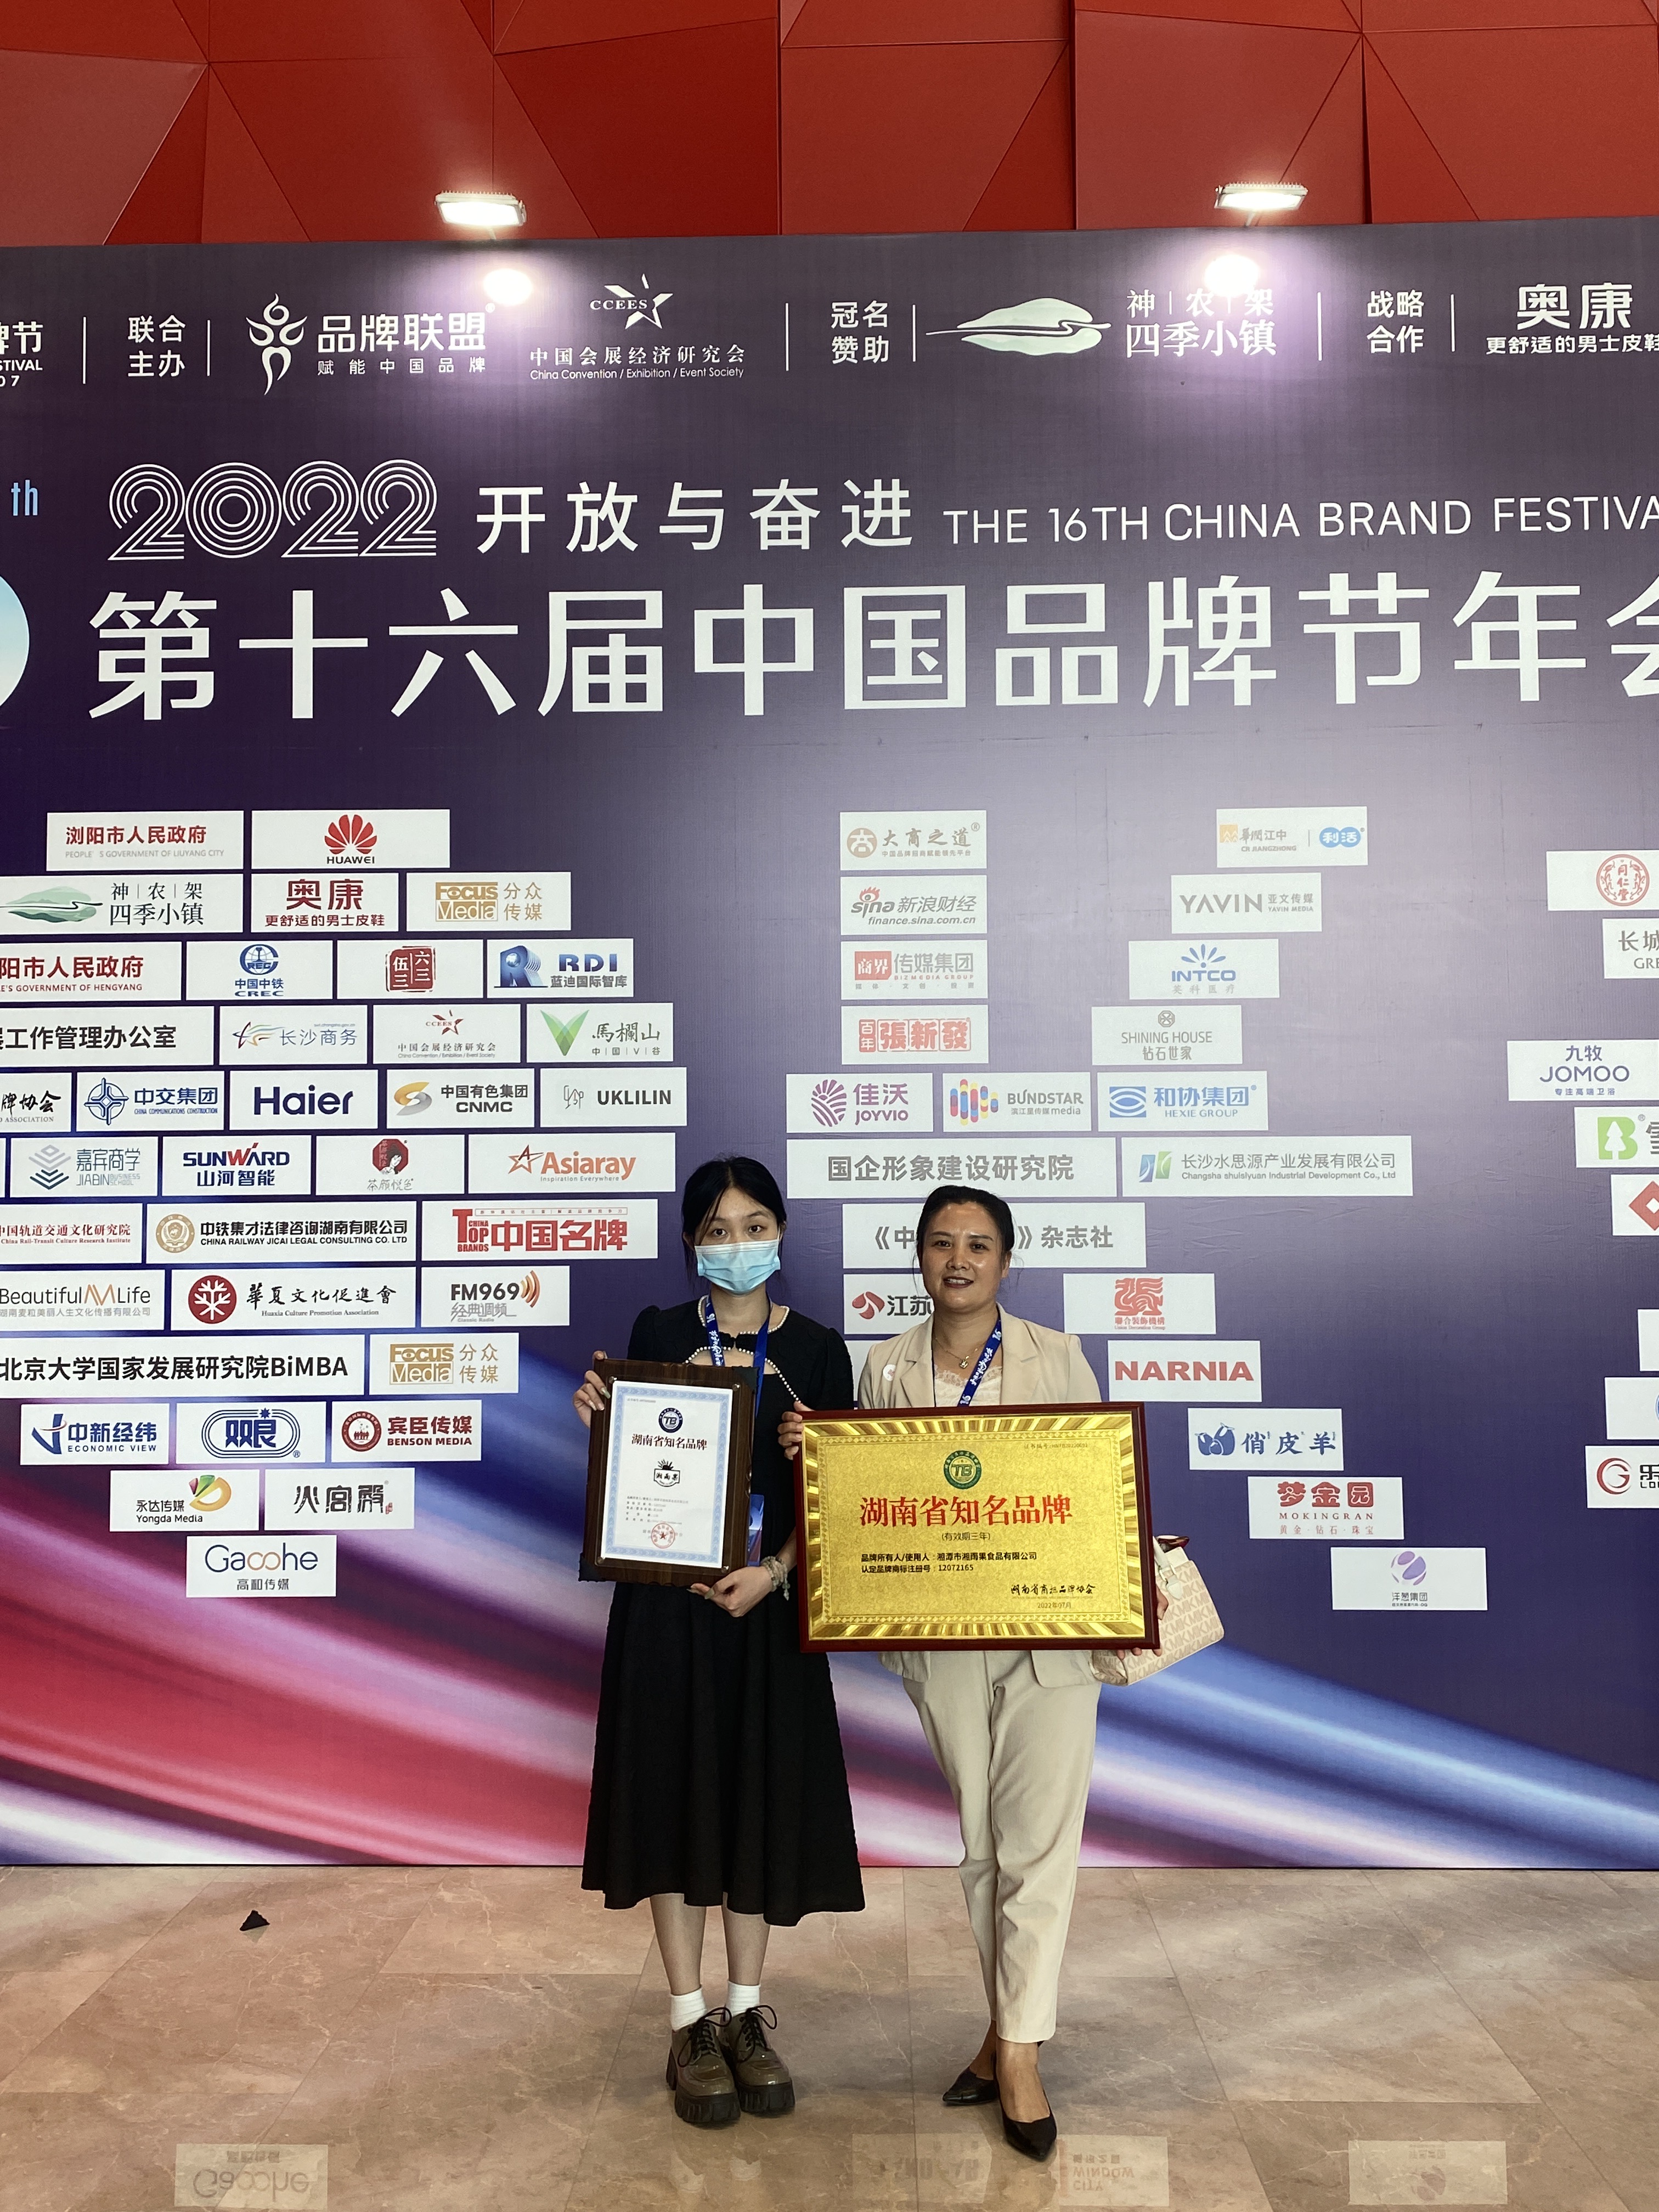 U fabricatore di piatti precotti Xiang Yu Guo hà premiatu a marca famosa di Hunan